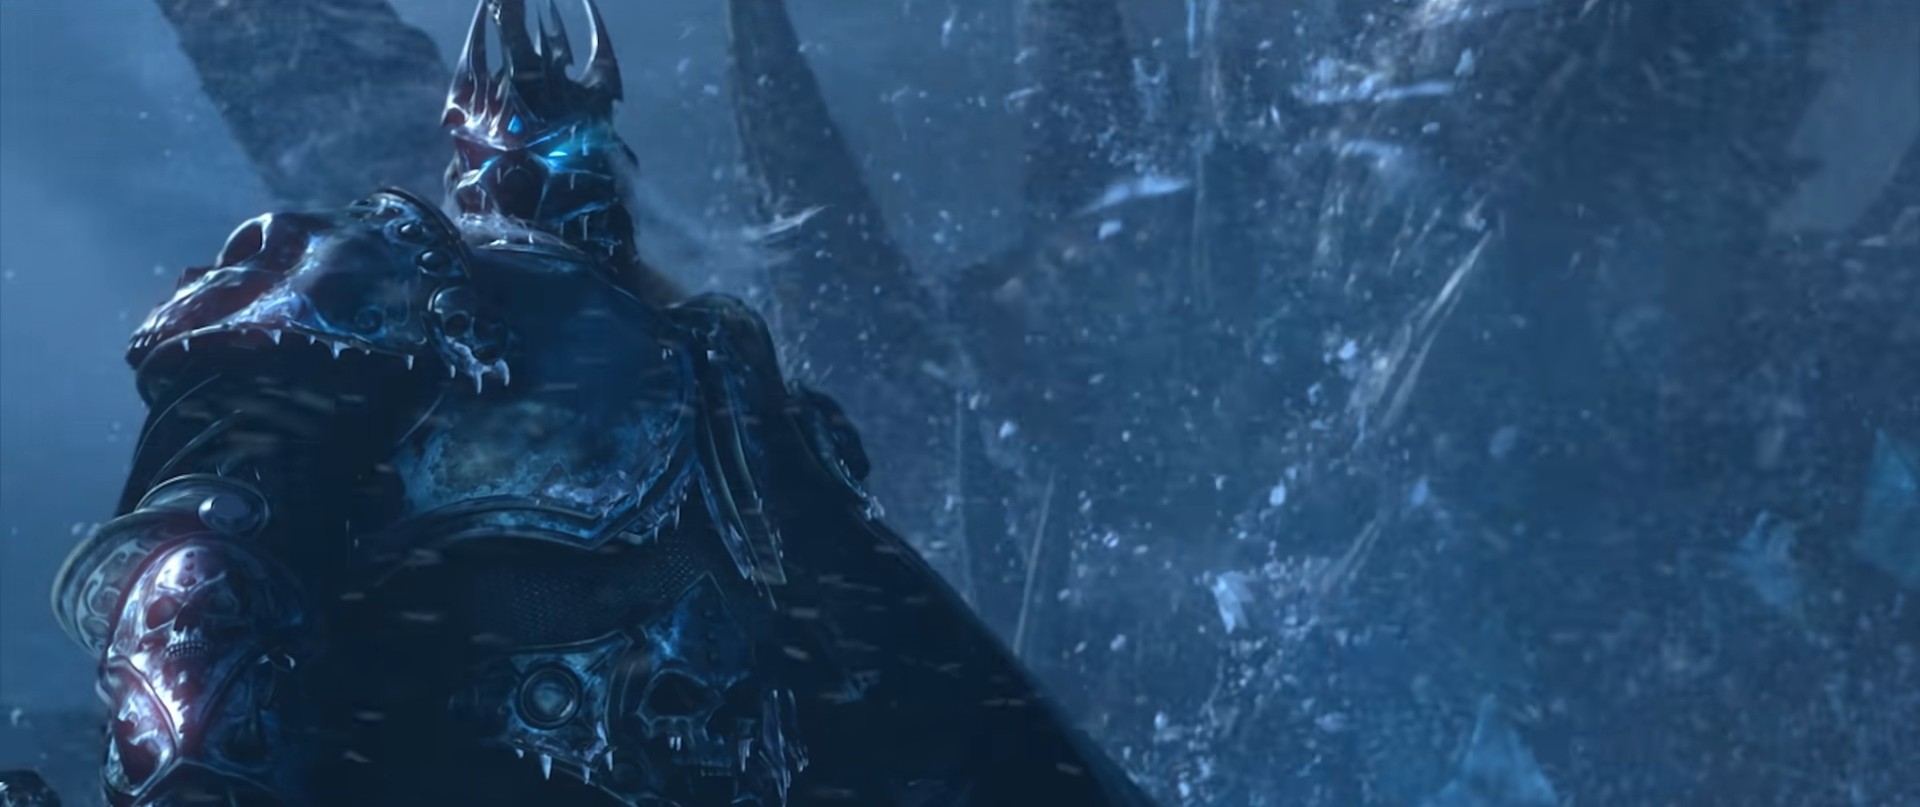 Imagem mostra cena da expansão Wrath of the Lich King, o rei caído de World of Warcraft